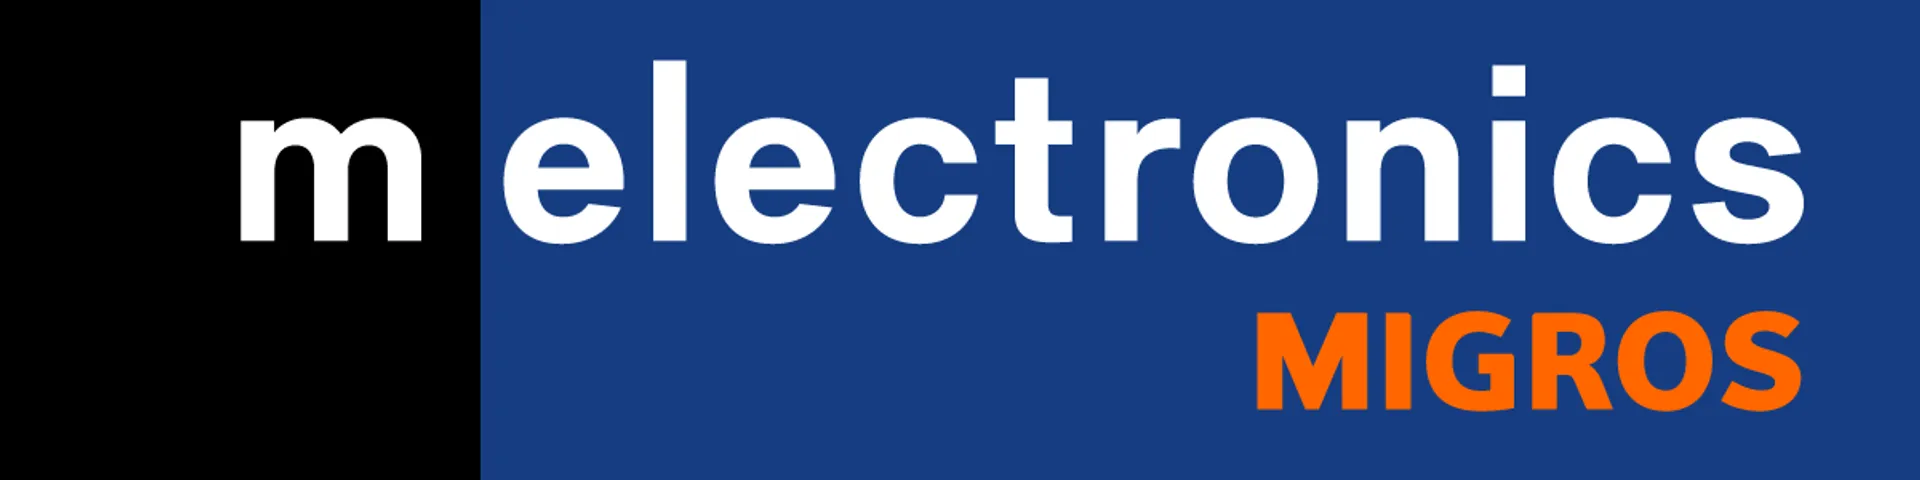 MELECTRONICS logo